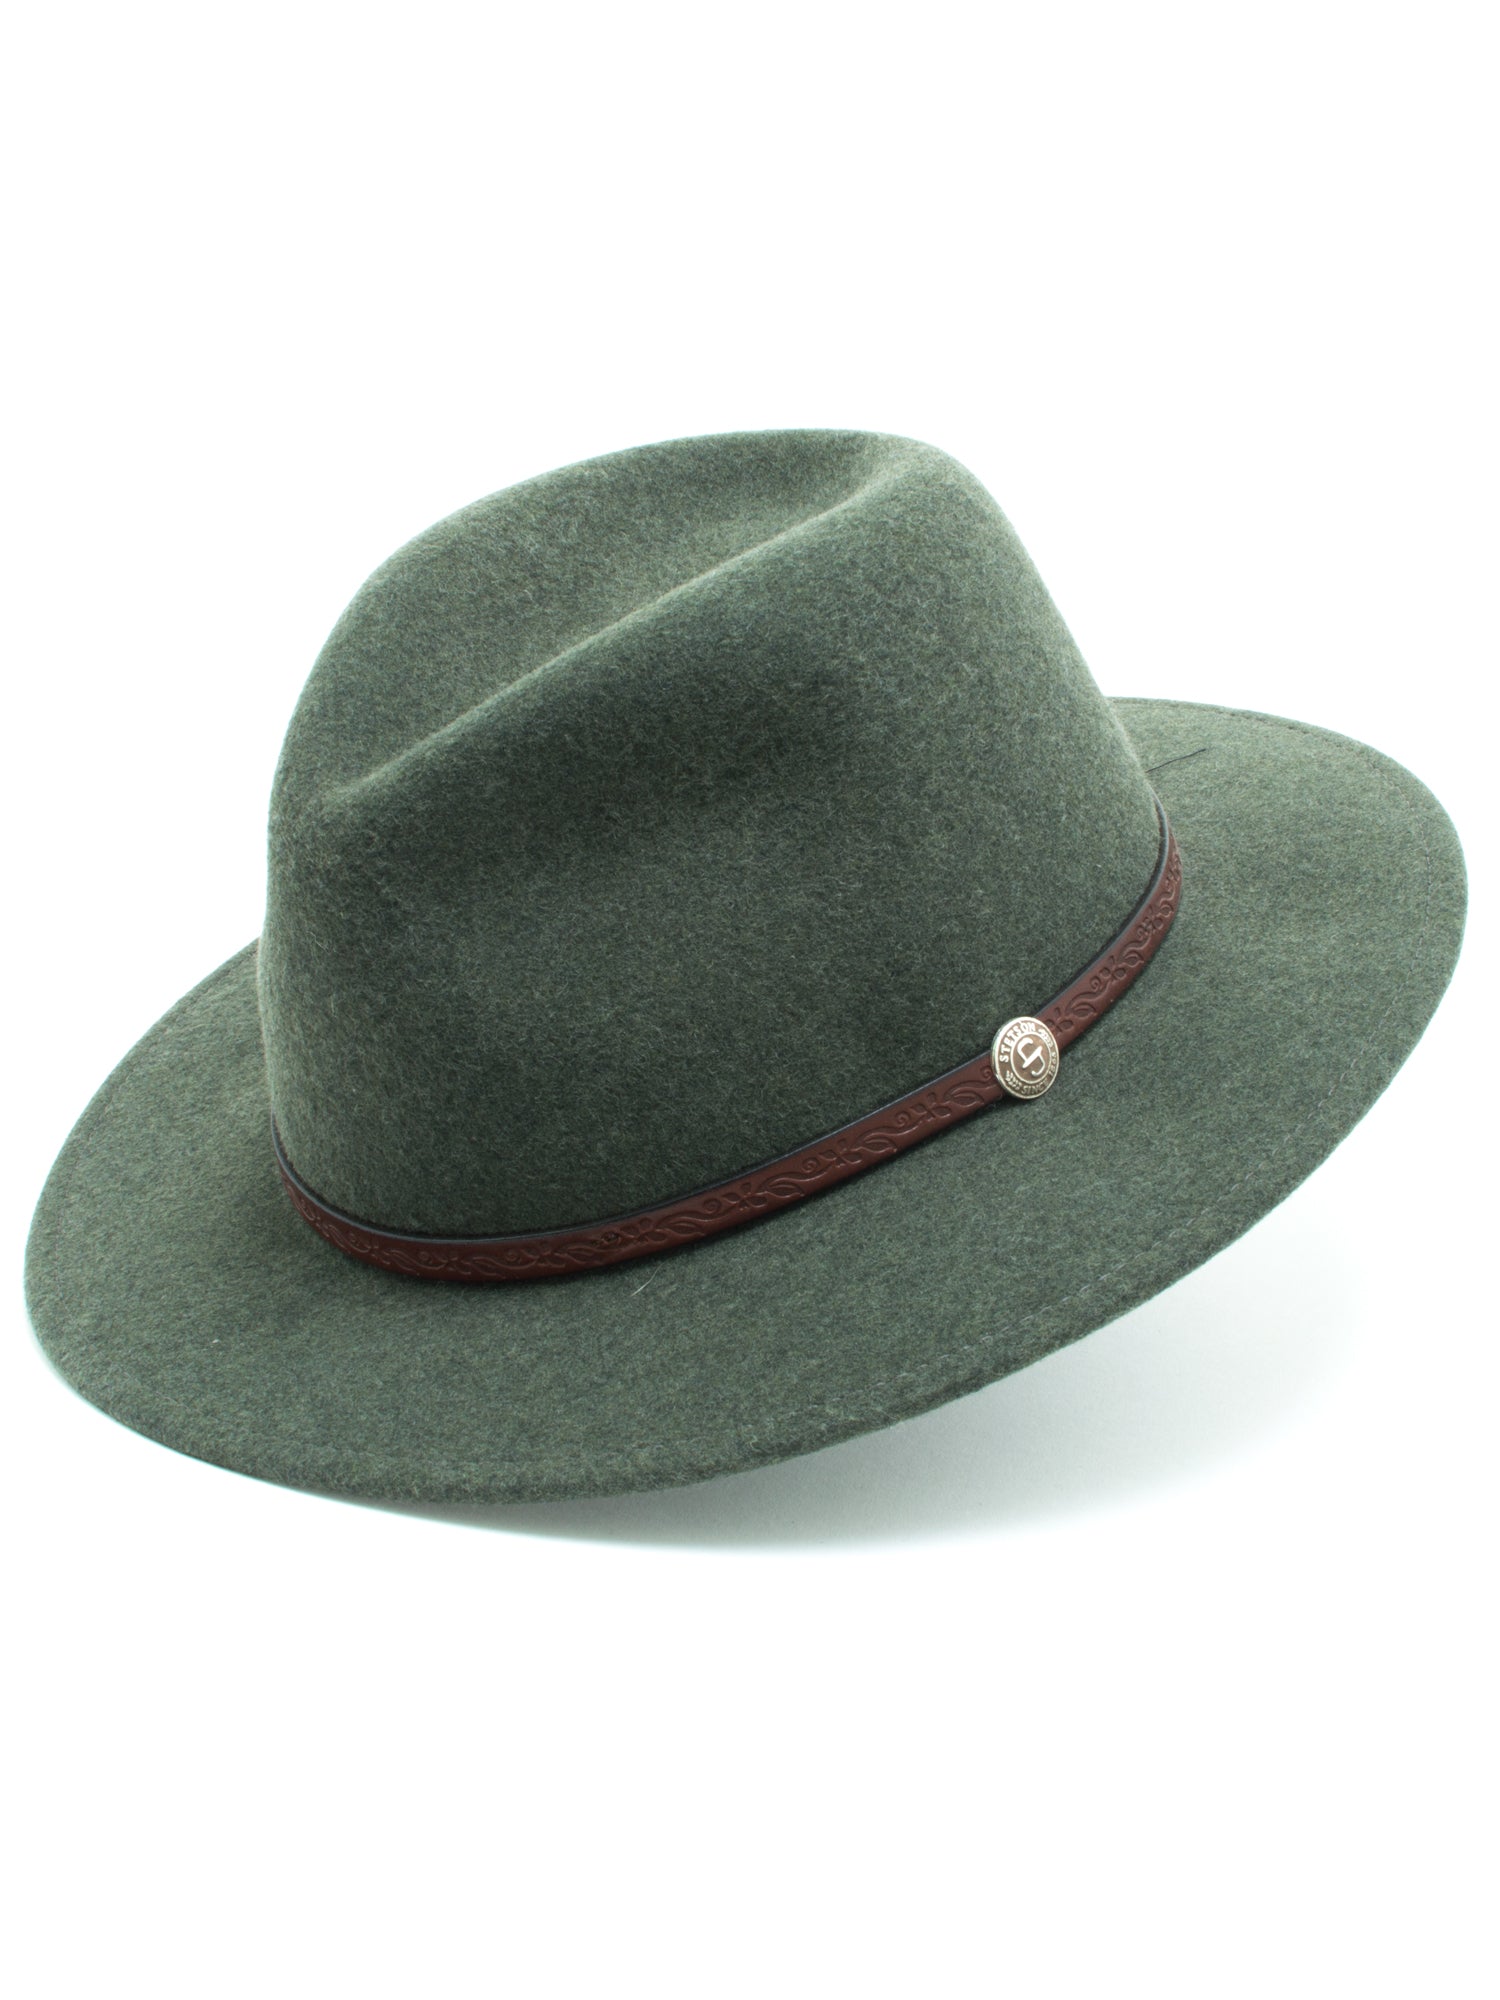 Stetson 100% Wool Felt 'Cromwell' Hats in Olive